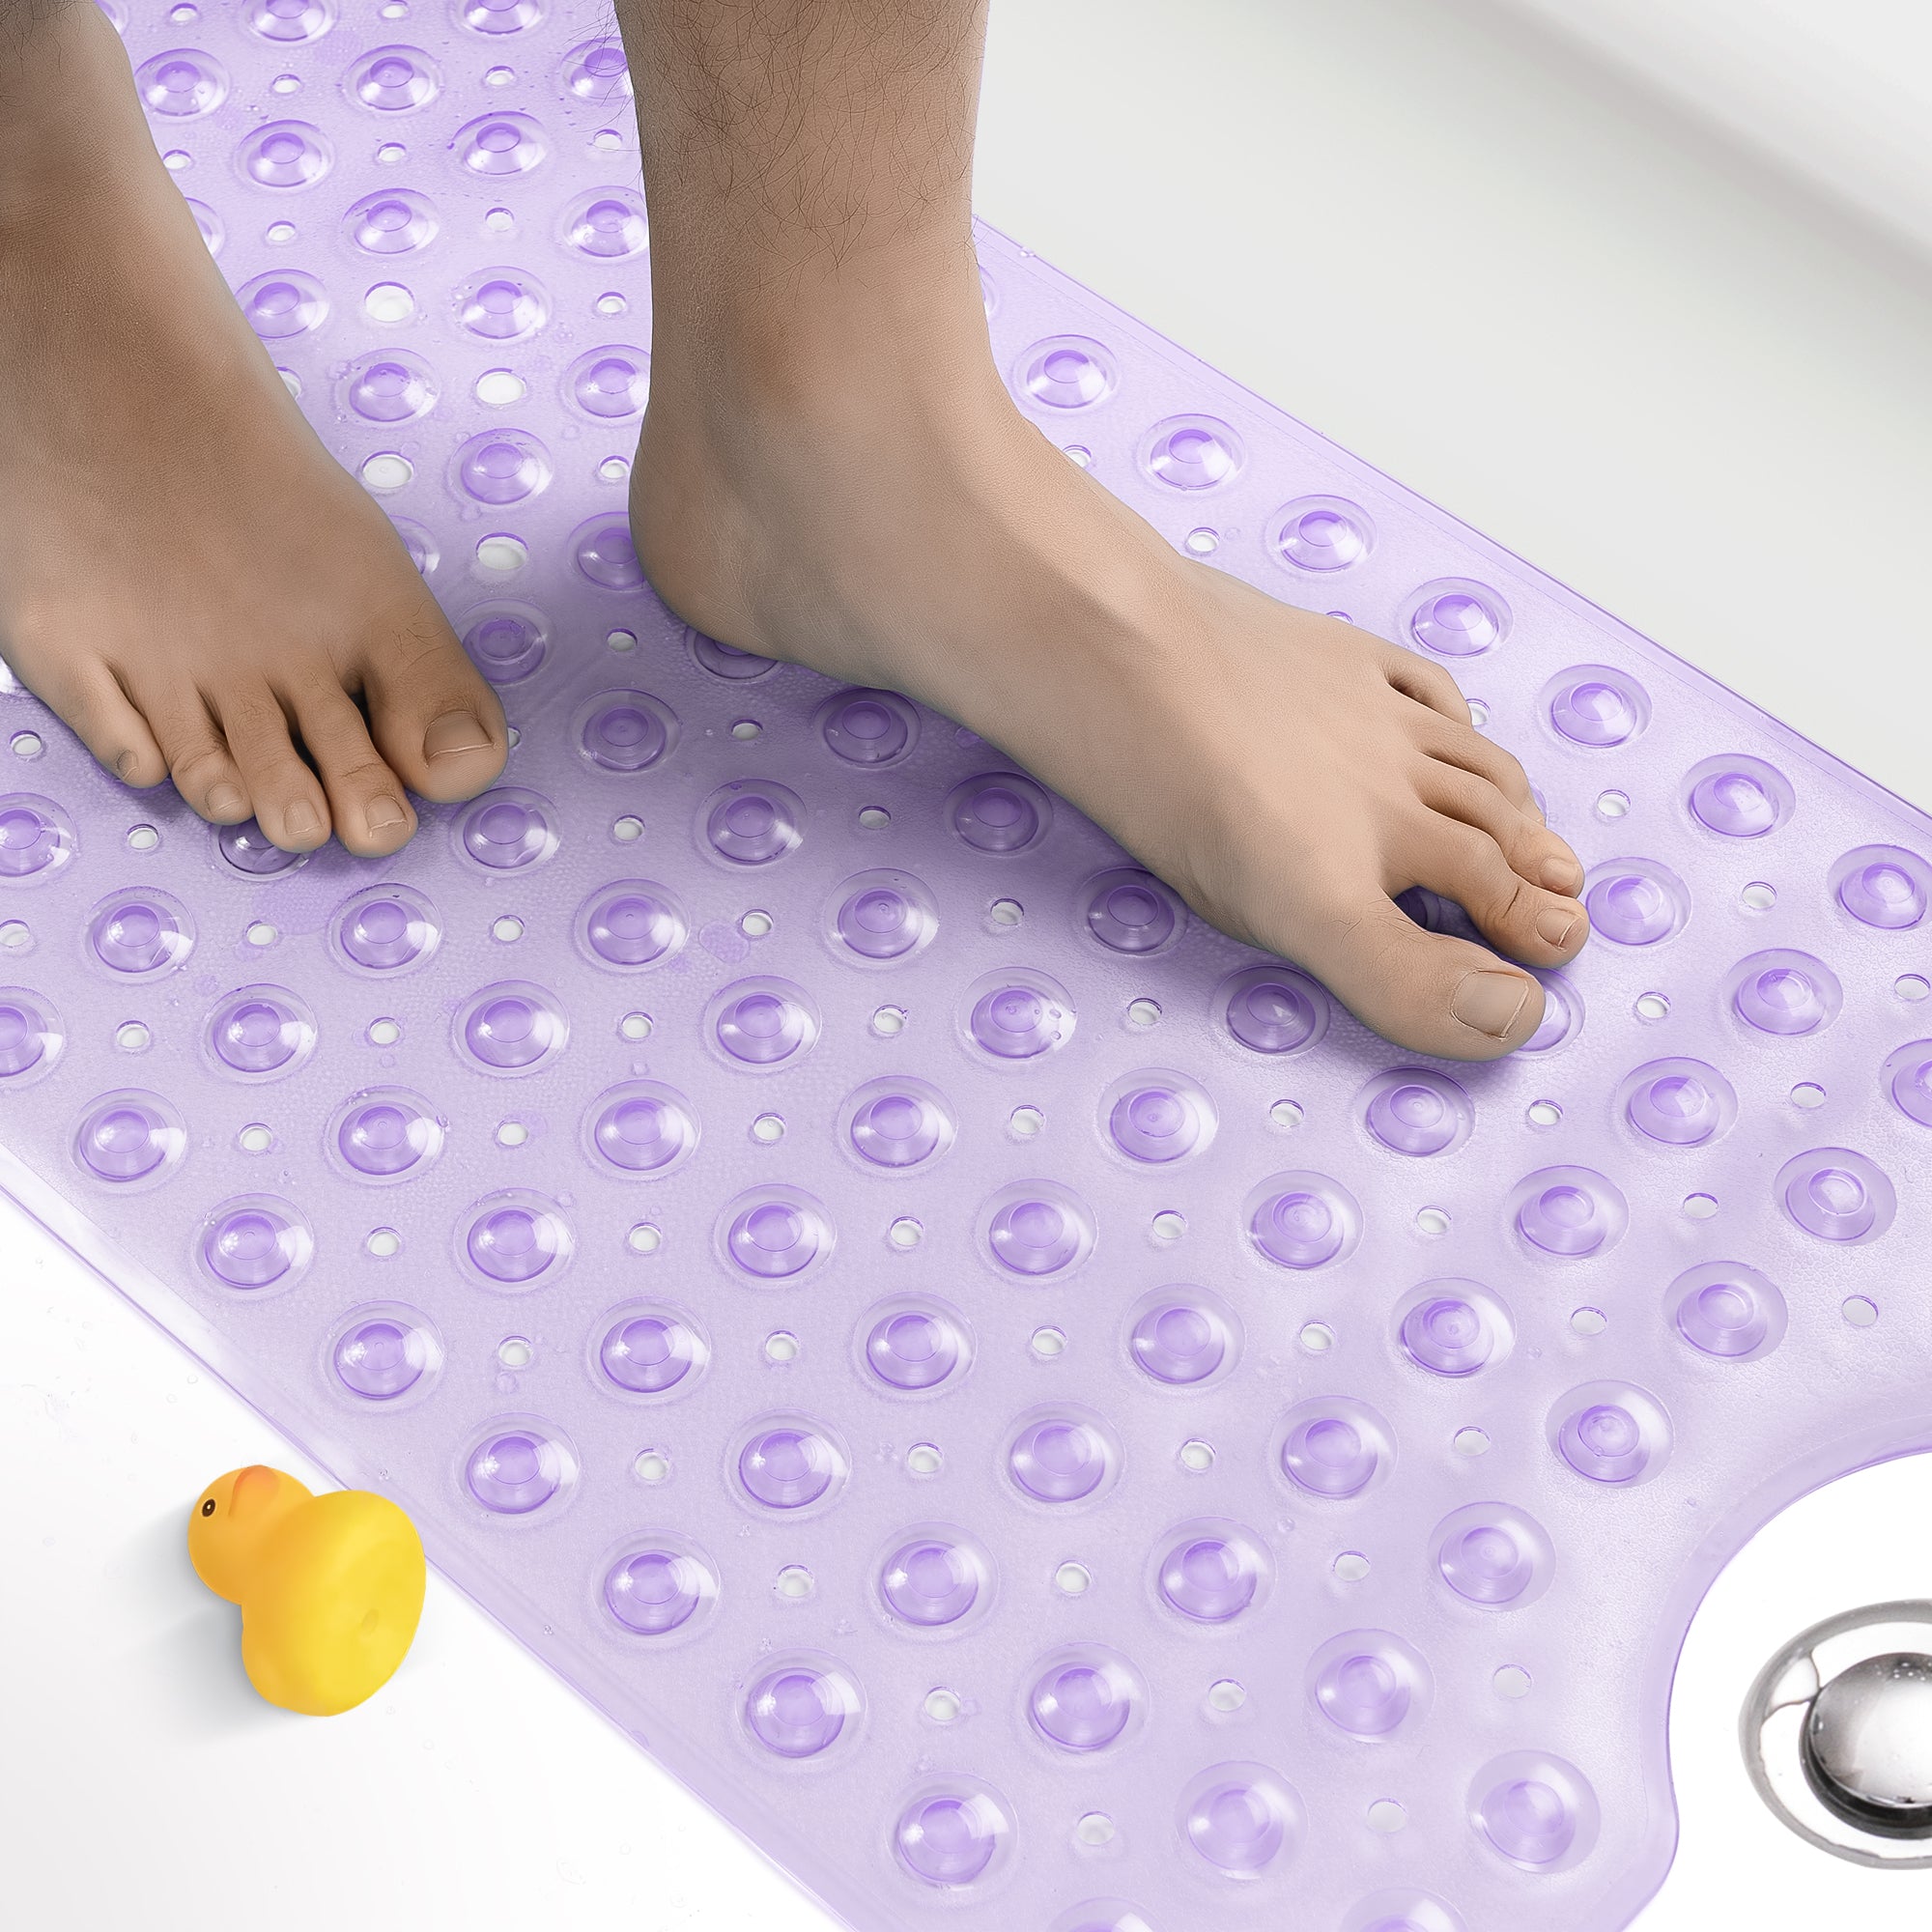 bath-mat-for-tub-non-slip-bath-tub-clear-purple